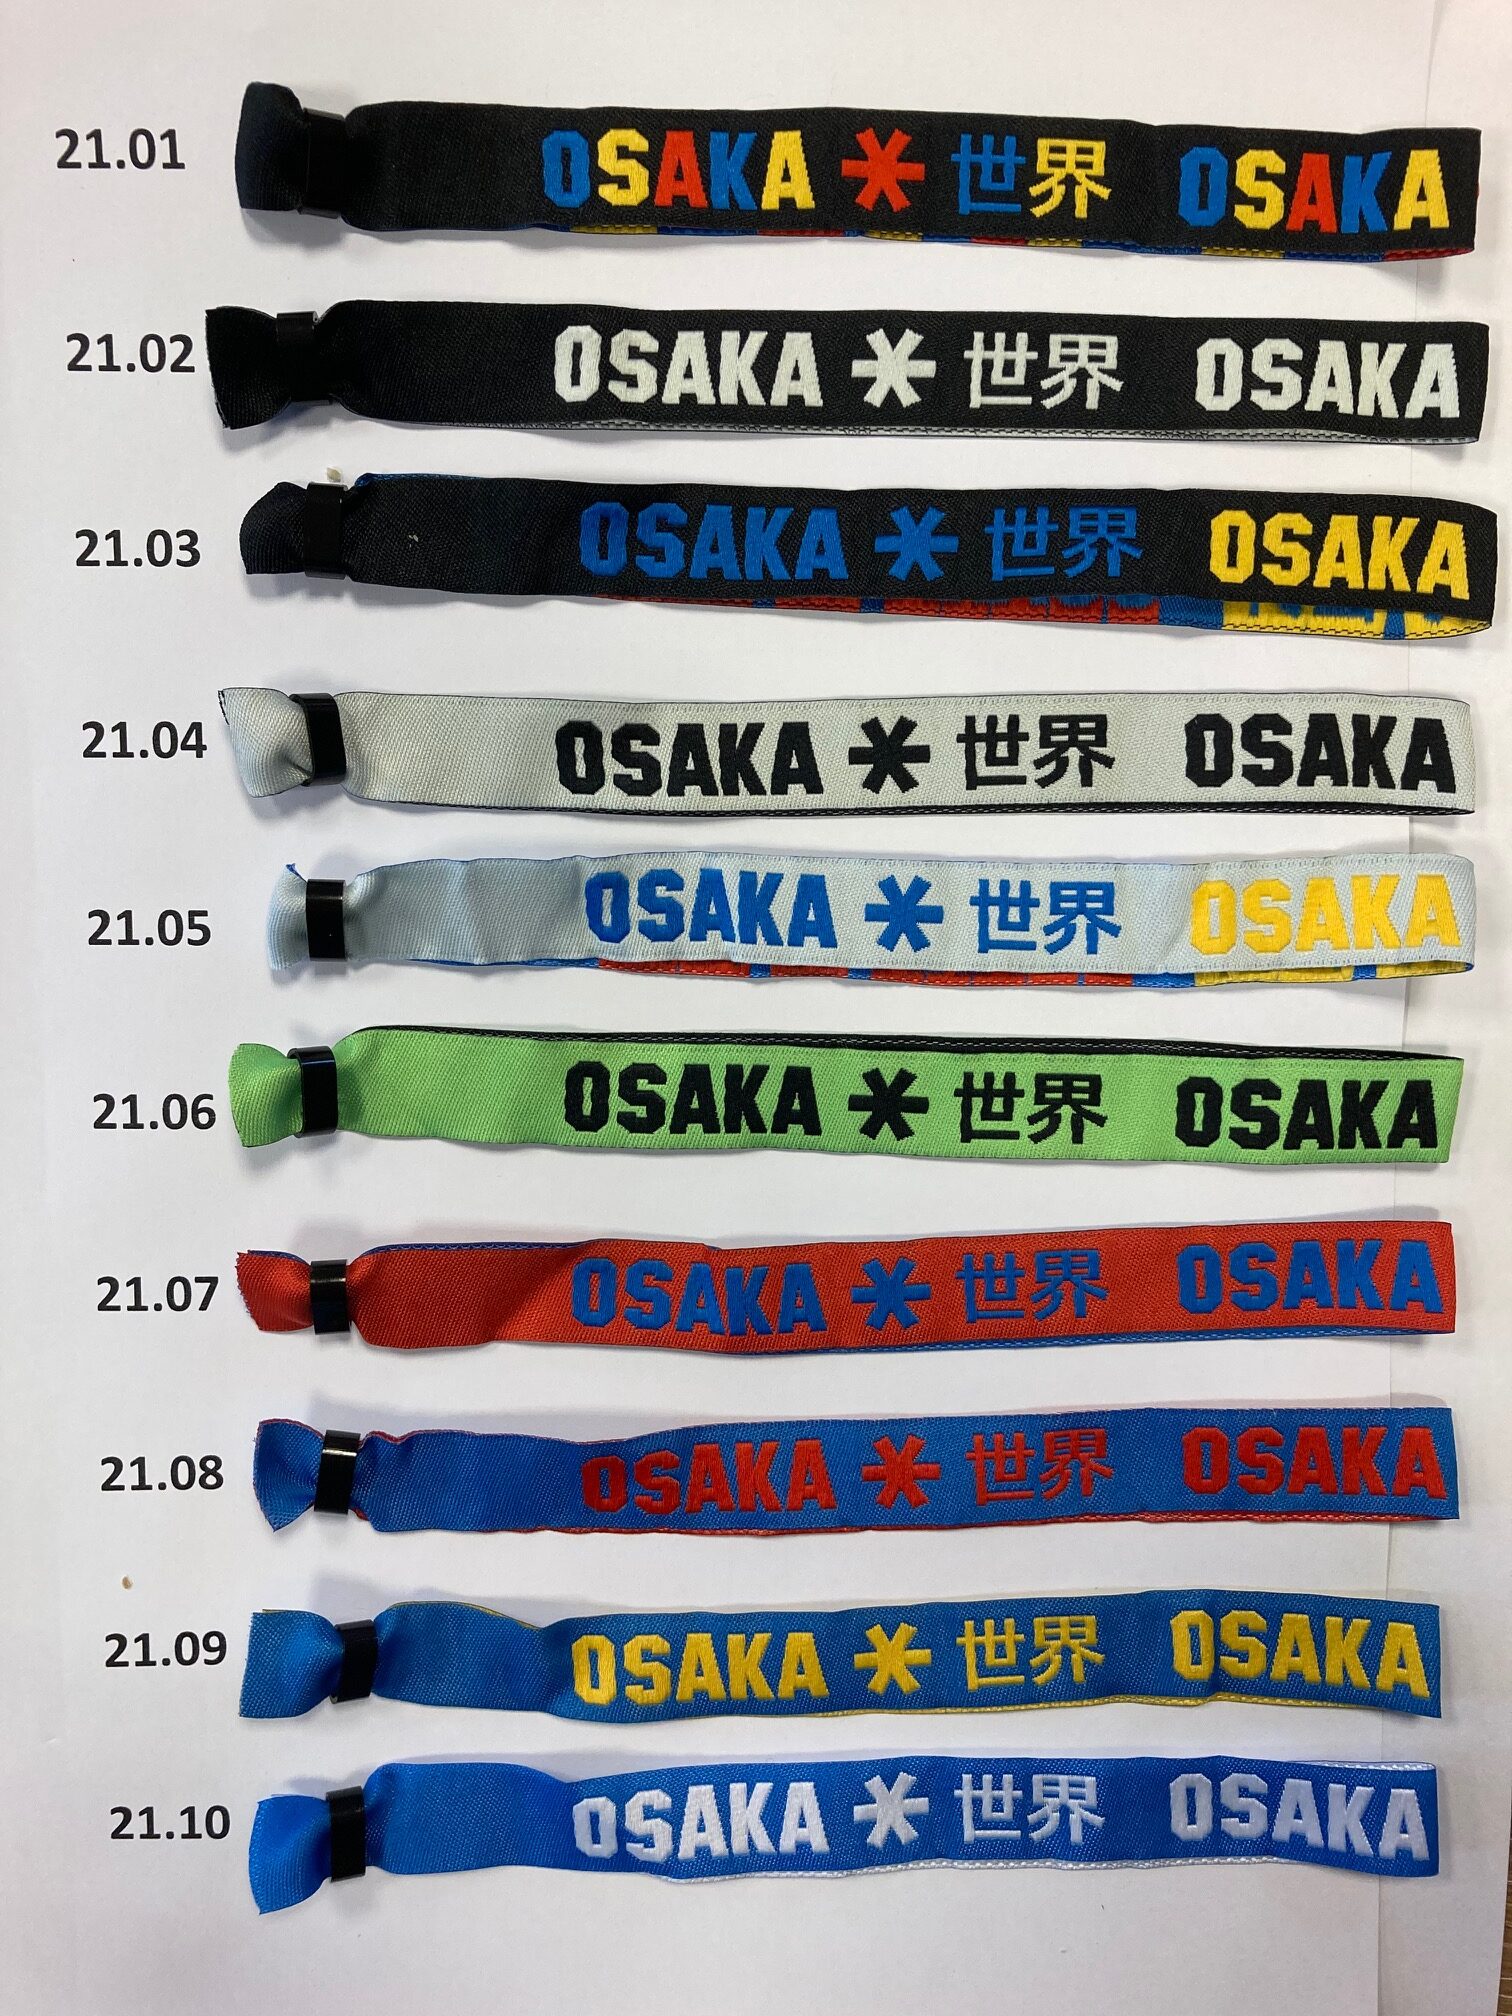 Osaka armbandjes bracelets 10 bandjes 11de GRATIS - De Hockeyzaak